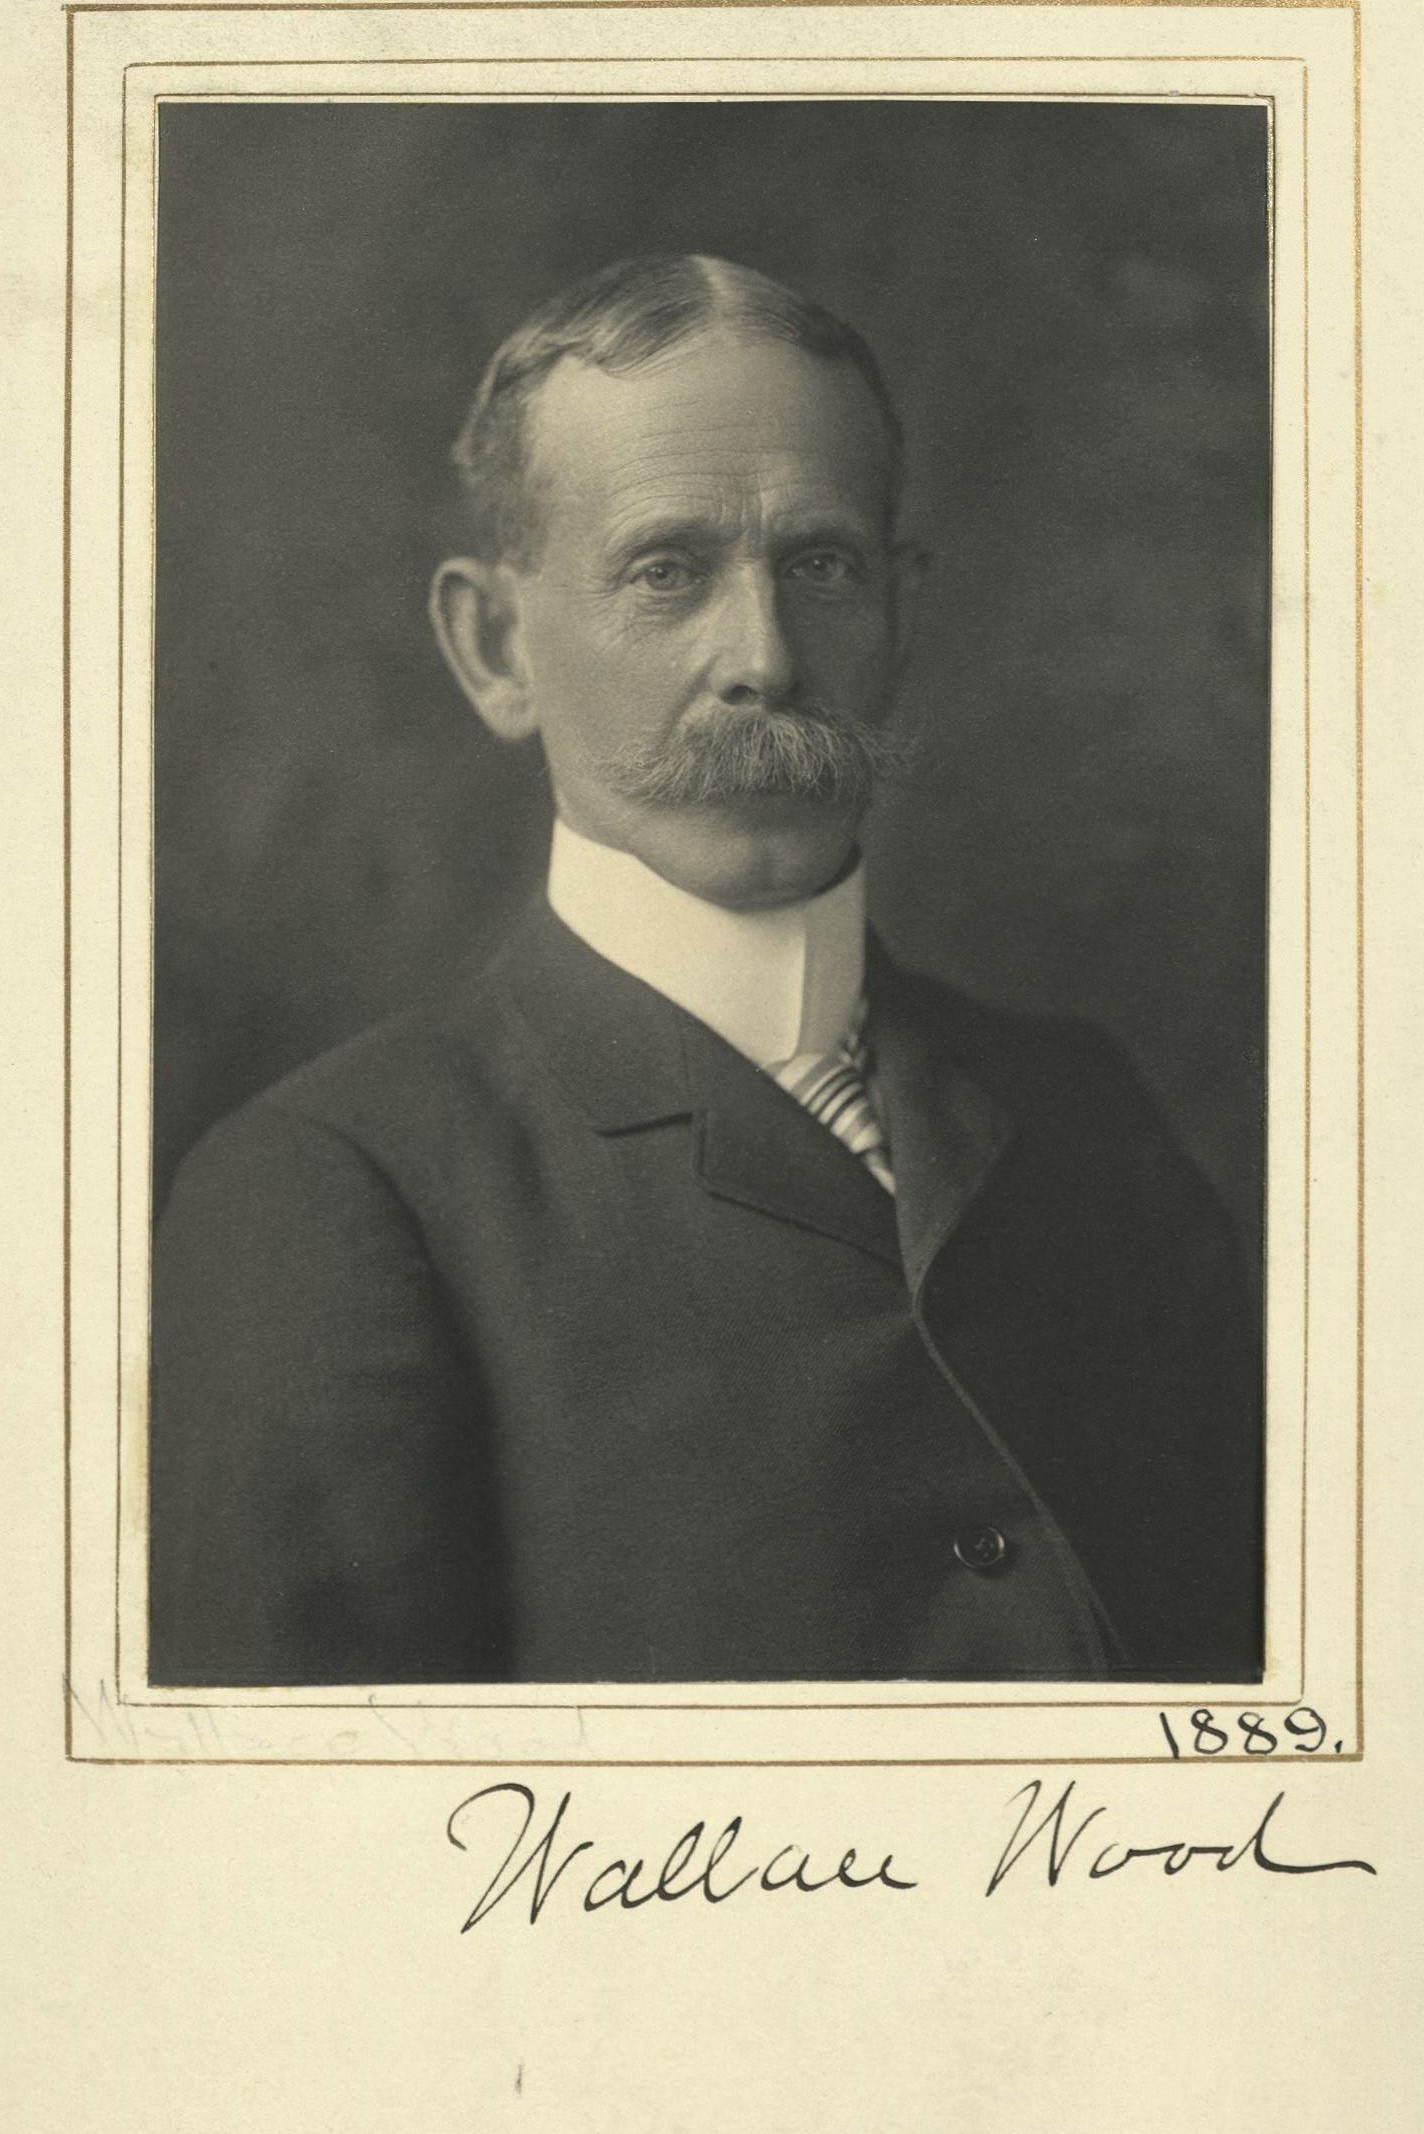 Member portrait of Wallace Wood